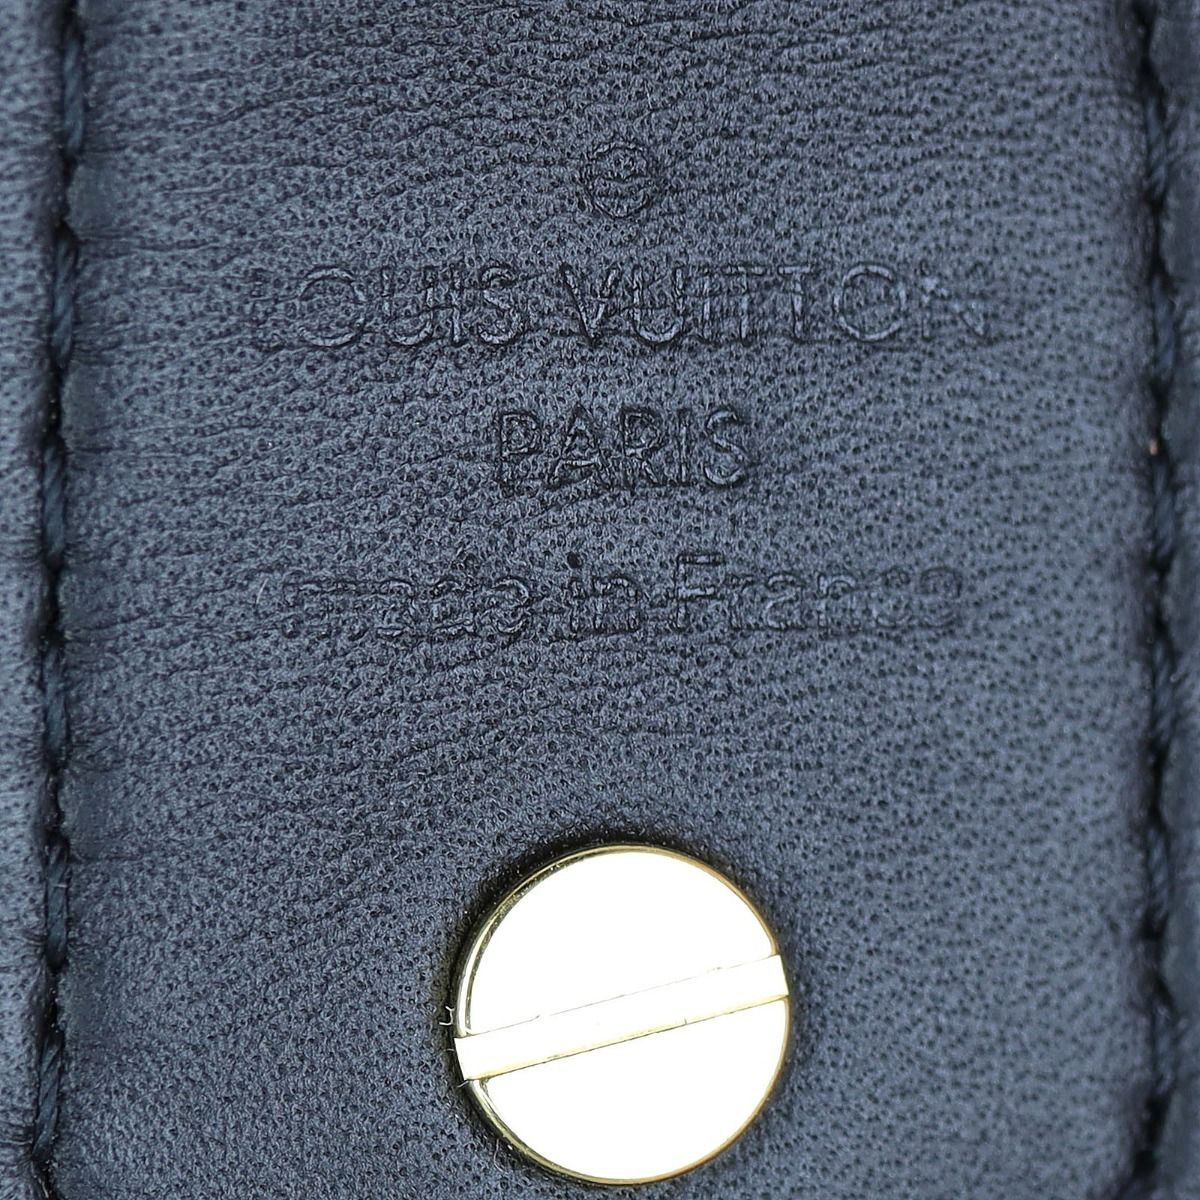 LOUIS VUITTON Reverse Monogram Bandouliere Shoulder Strap XL Black 1261221